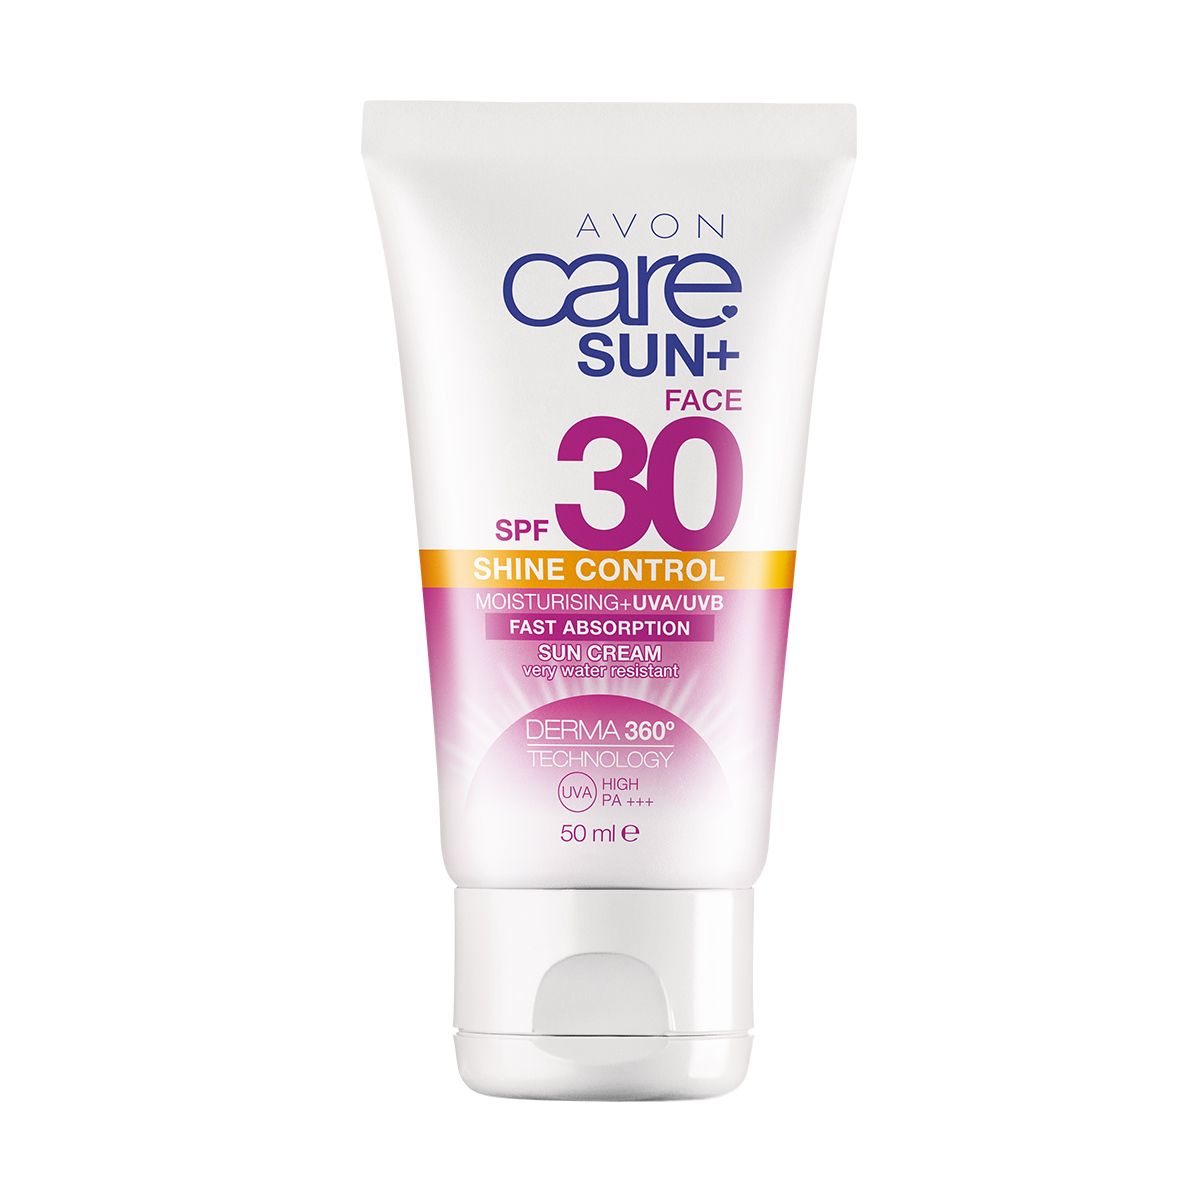 Avon Care Sun+ Creme Solar Hidratante para Rosto com Controle de Brilho FPS30